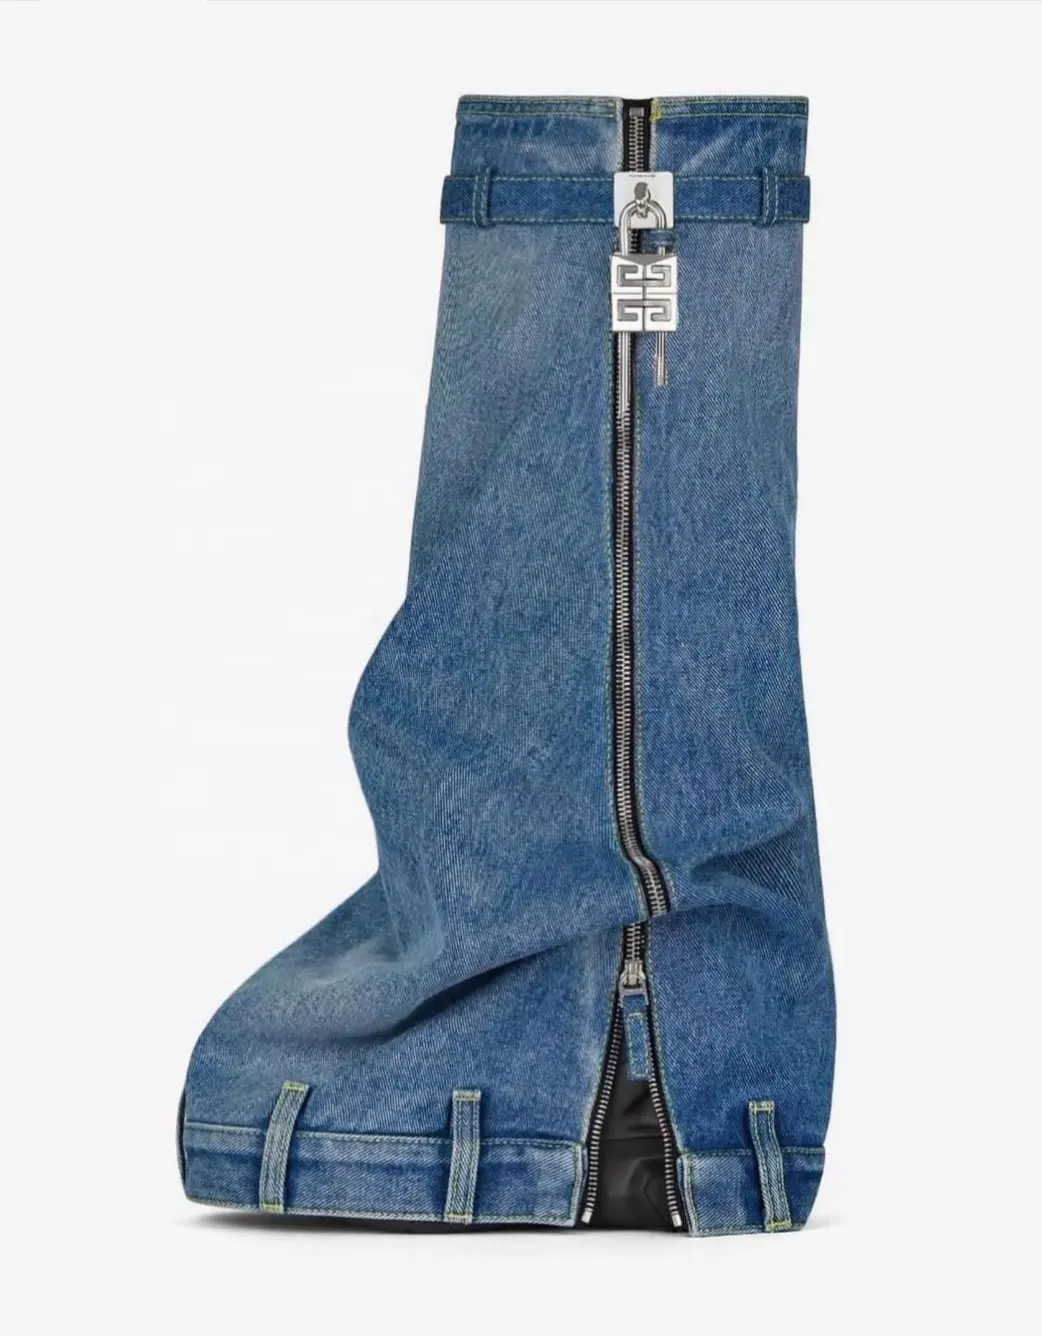 Enmayer Hot Sale Brand Design Shark Lock Zipper Up Fashionable Denim Upper Knee High Boots For Women